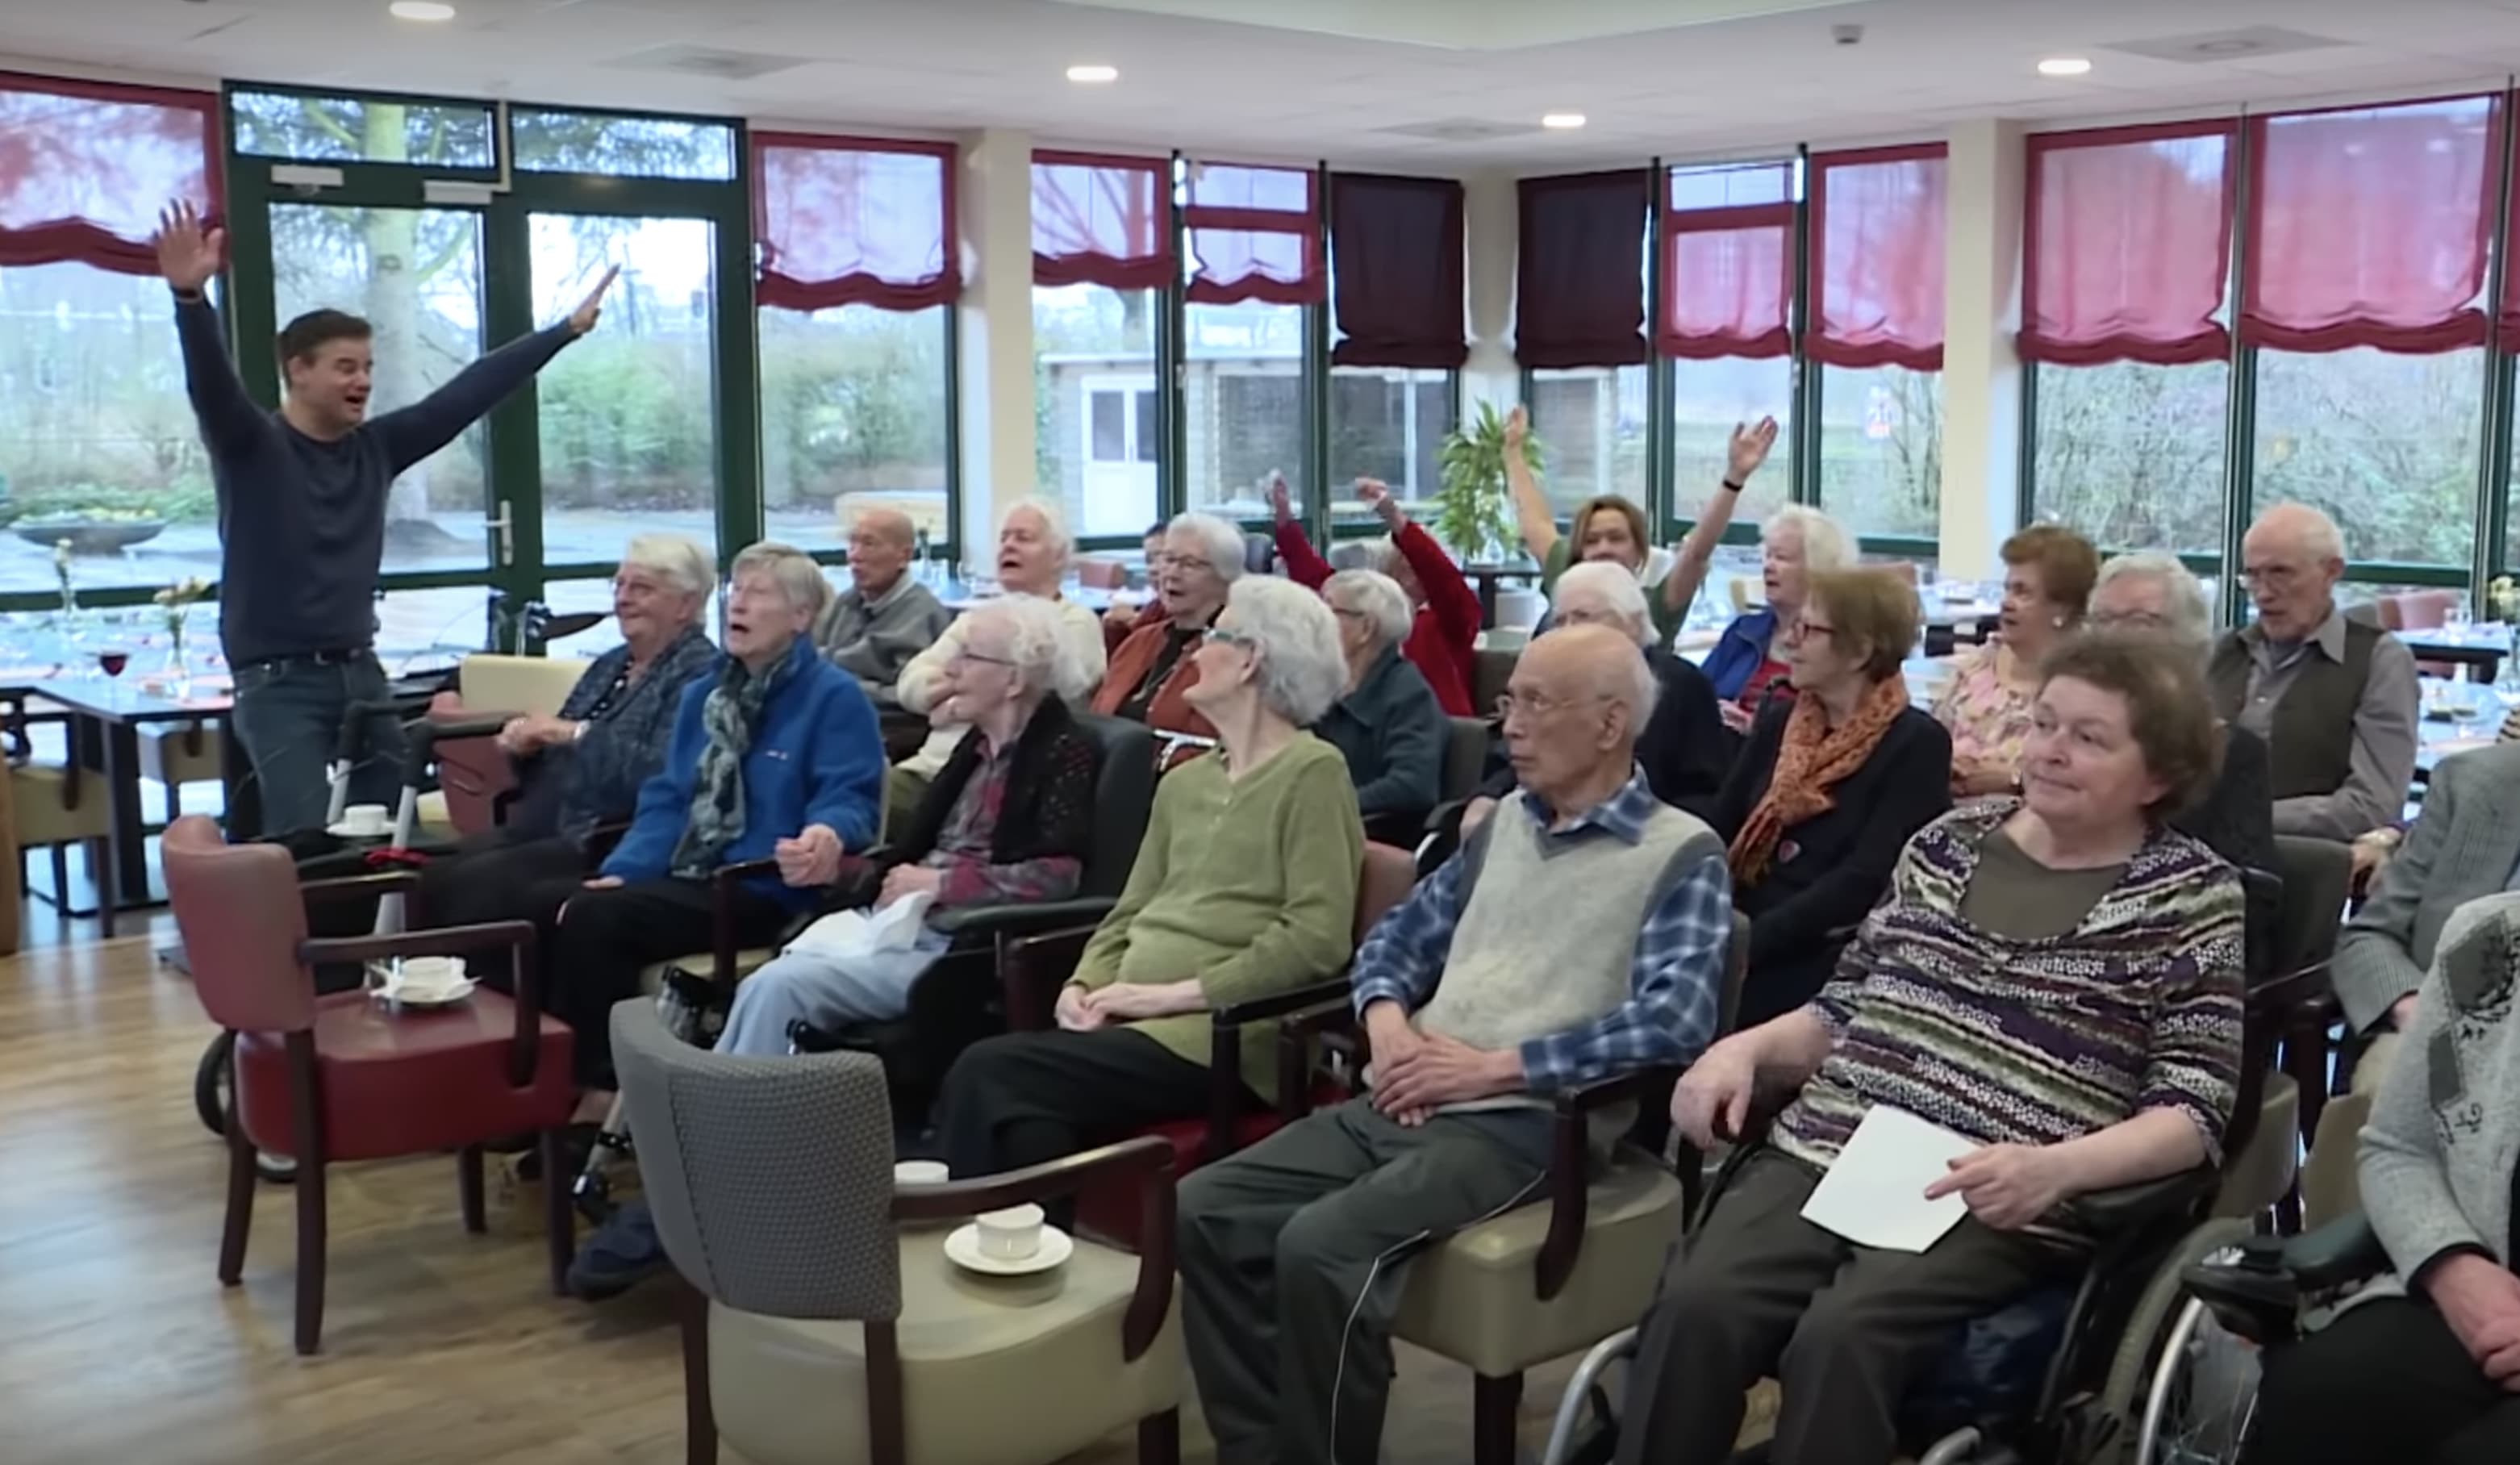 Wilfred zingt voor ouderen in verzorgingshuis: 'Ik ben alle schaamte voorbij'